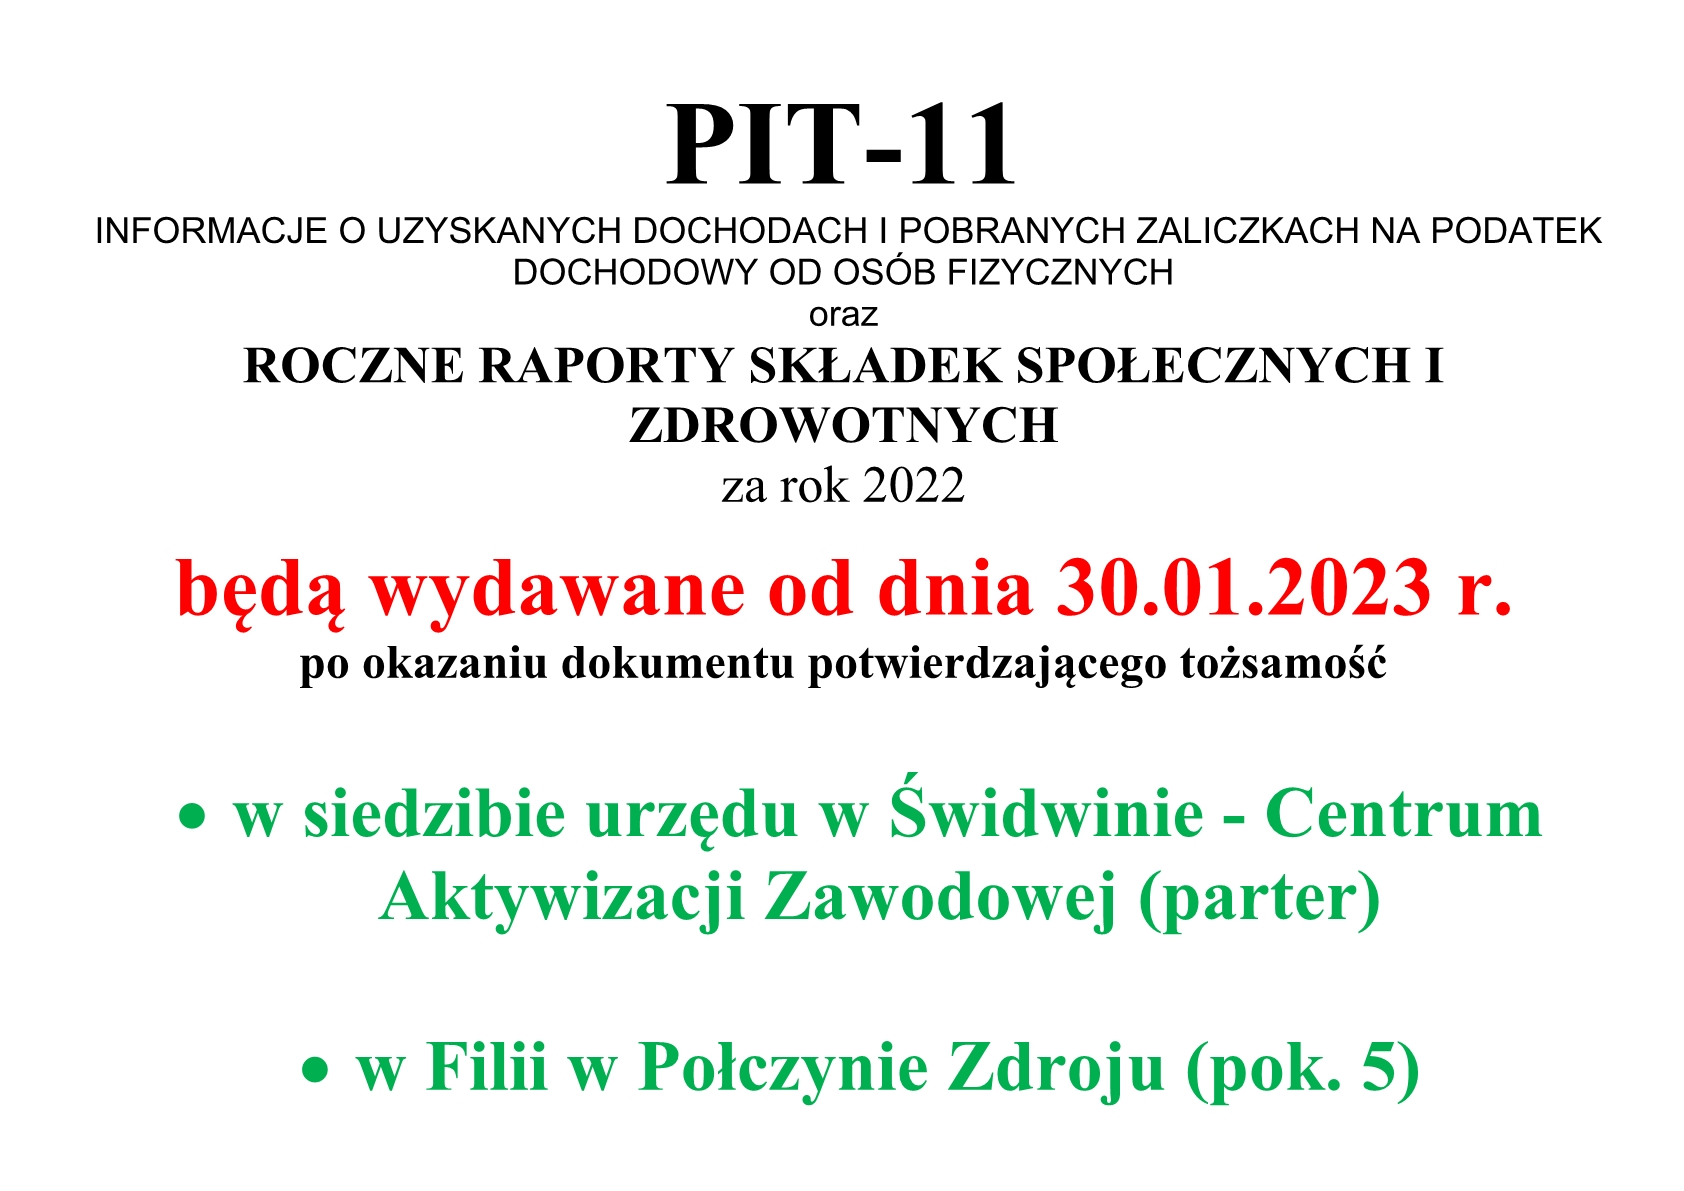 PIT-11 i roczne raporty_termin wydawania za 2022